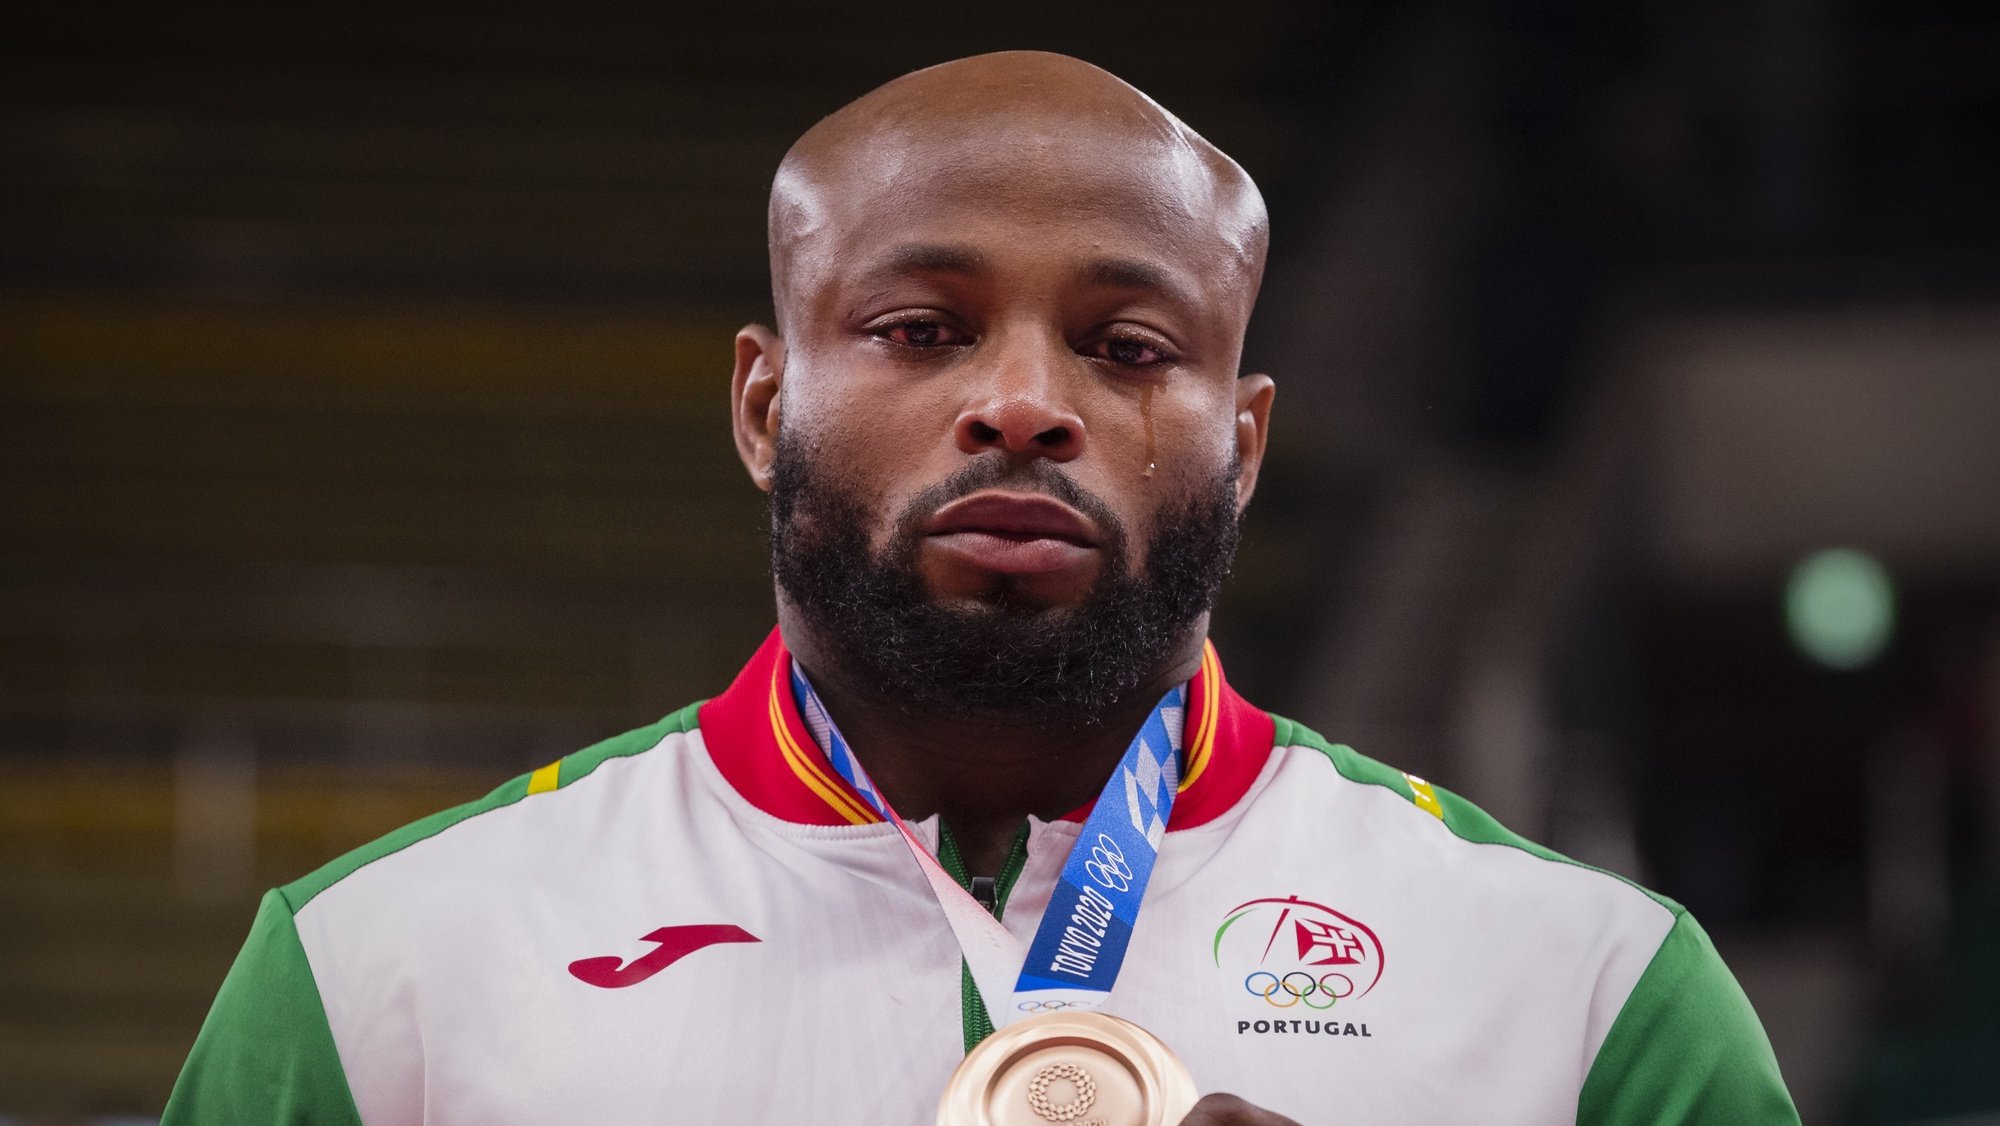 O judoca português, Jorge Fonseca conquistou a medalha de bronze na categoria de -100 kg, nos Jogos Olimpicos de Tóquio2020, no Nipon Budokan de Tóquio, Japão, 29 de julho de 2021. JOSÉ COELHO/LUSA